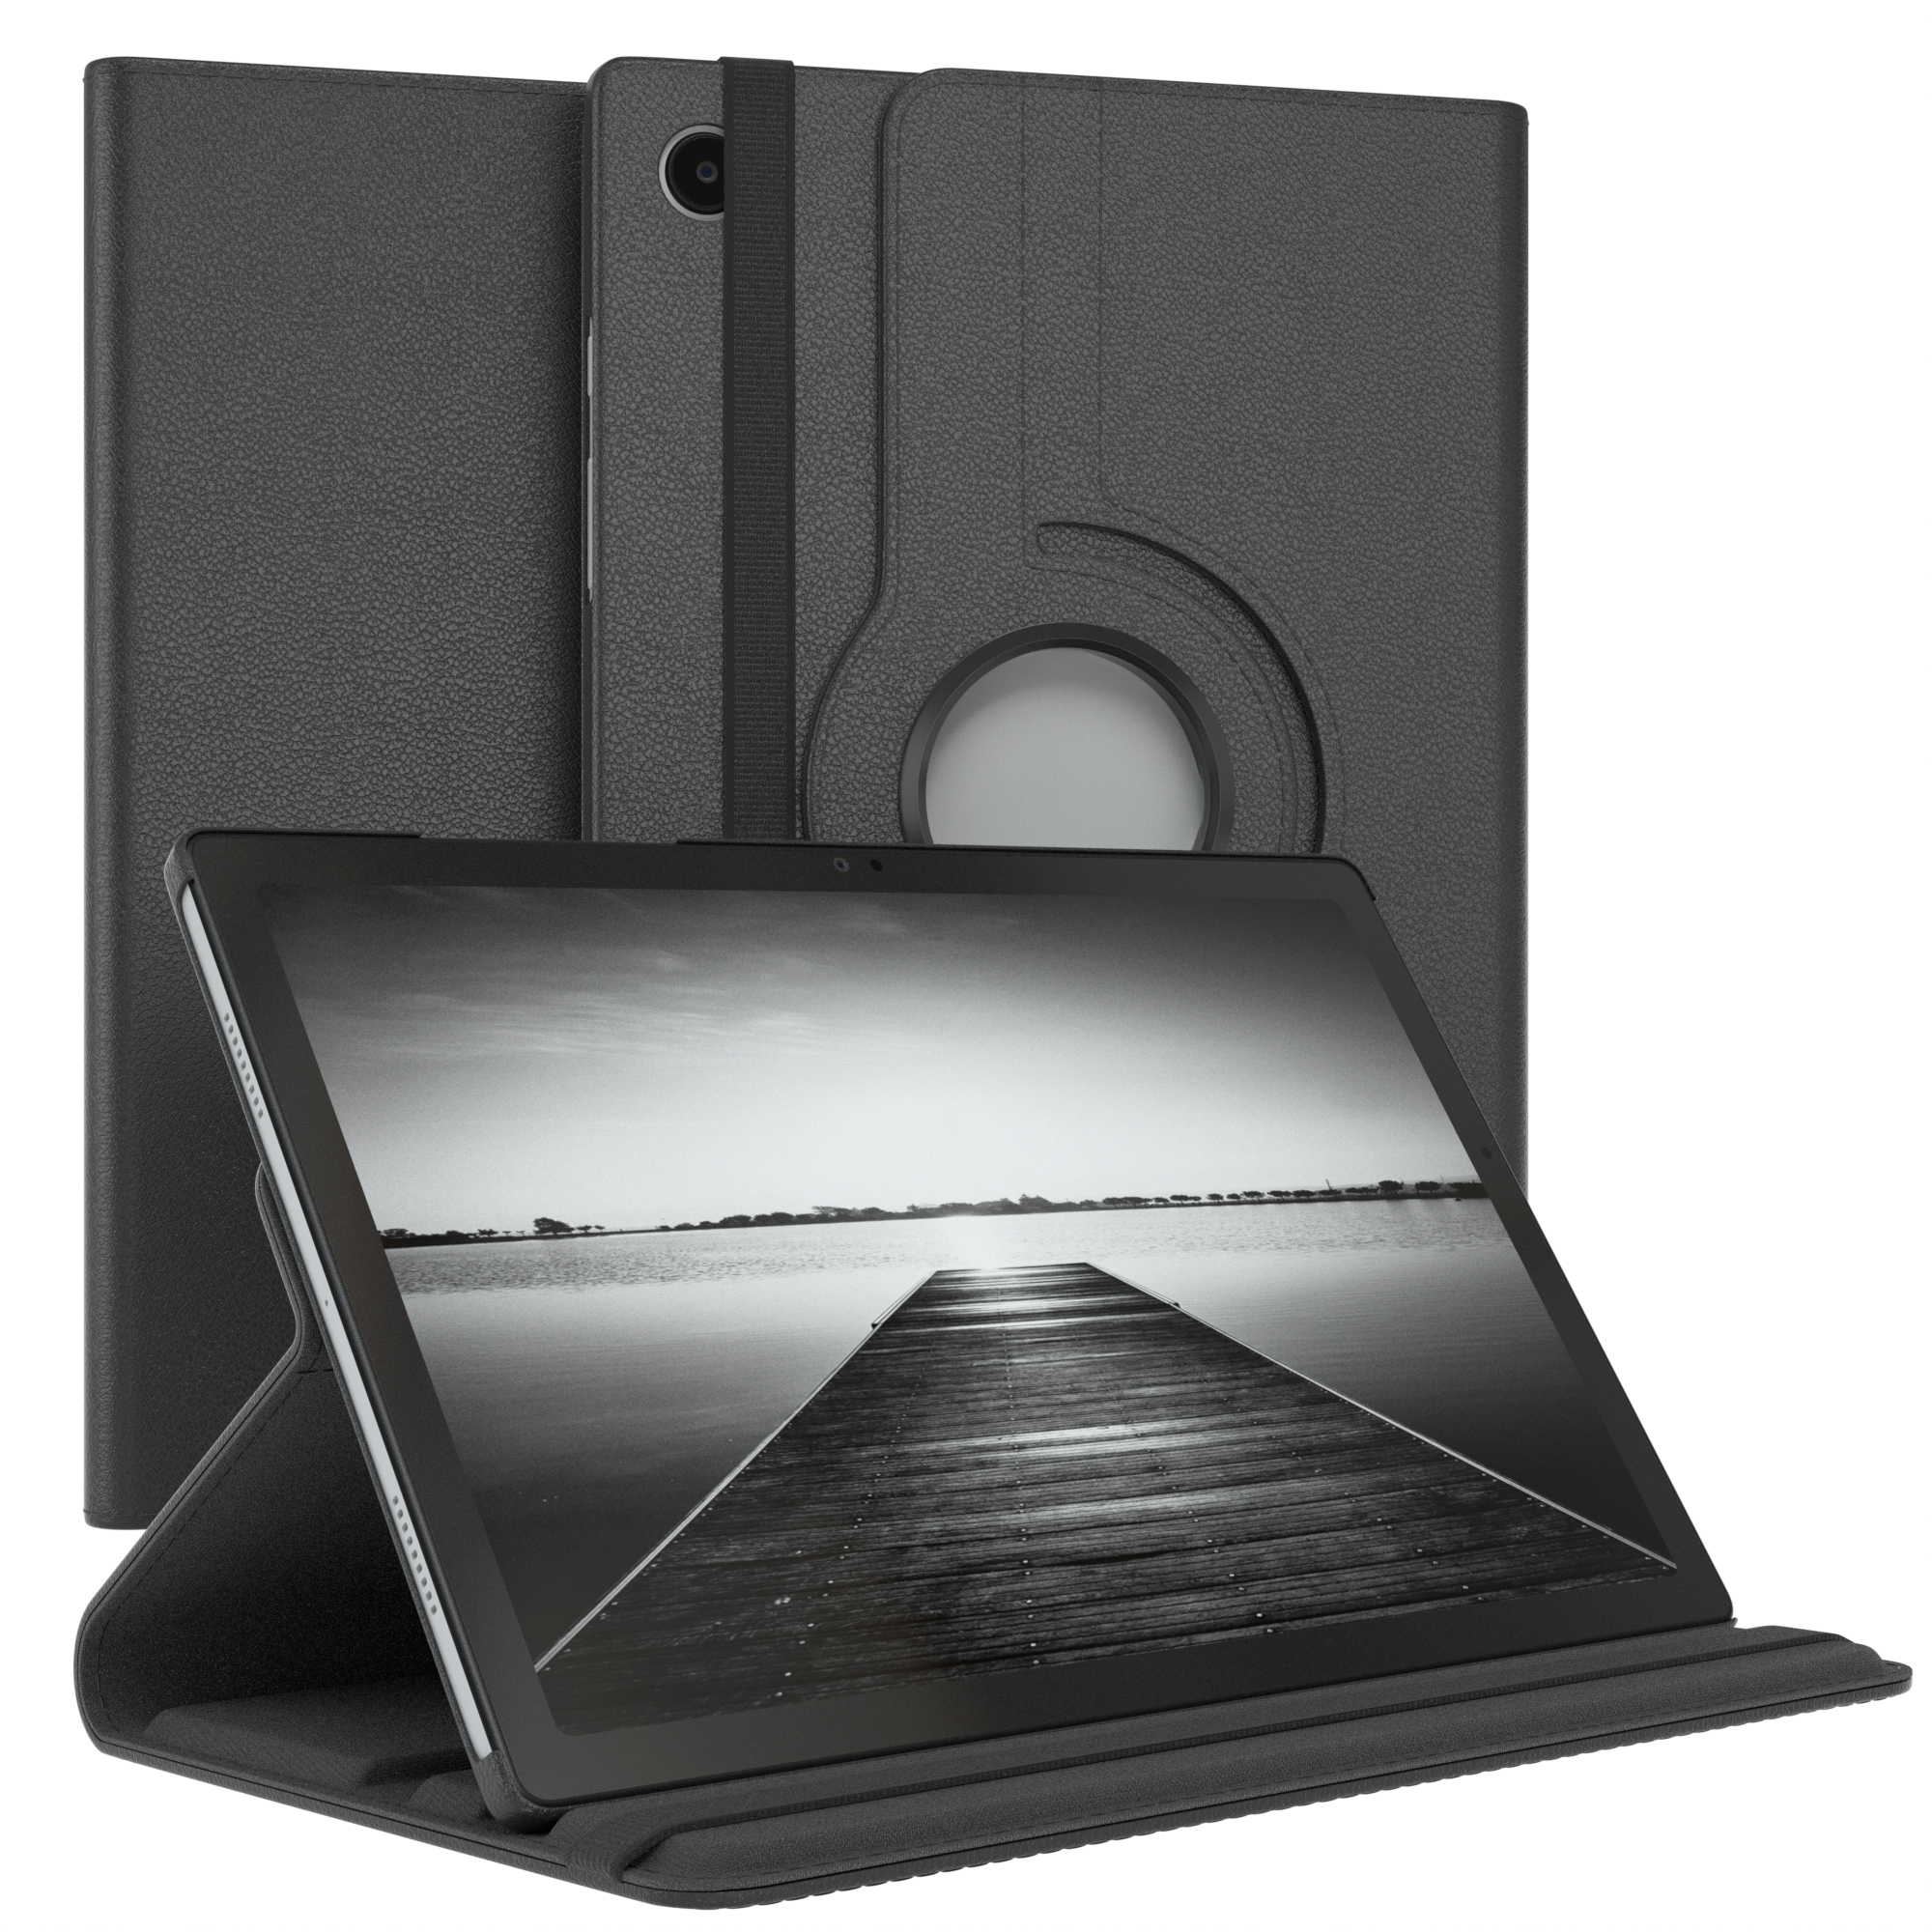 EAZY CASE Schutzhülle Rotationcase 10,5 Schwarz Kunstleder, für LTE Tablethülle Galaxy A8 Tab 10.5\